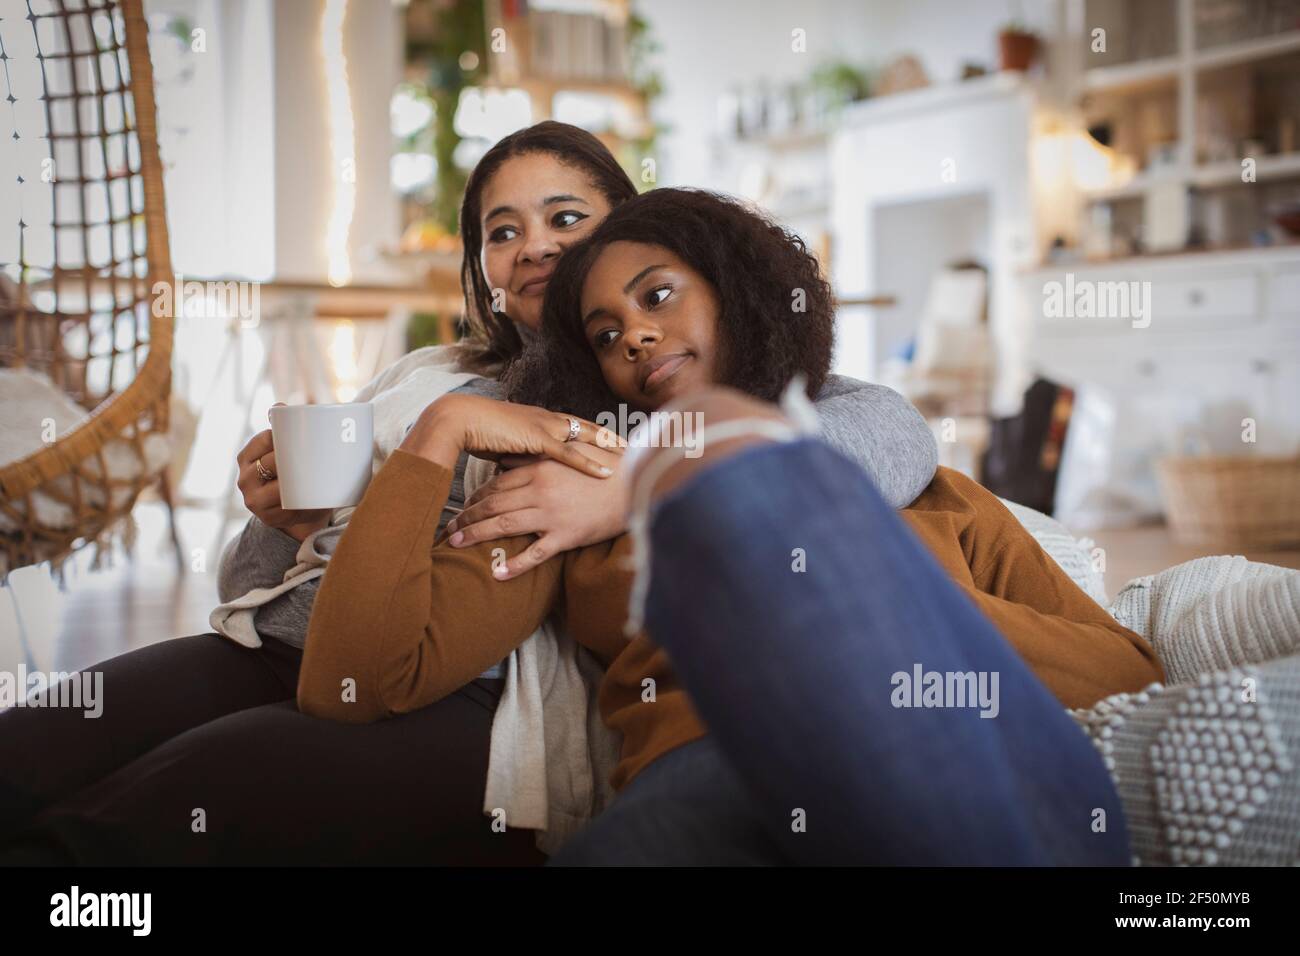 Une mère et une fille affectueuses se câliner sur le canapé Banque D'Images